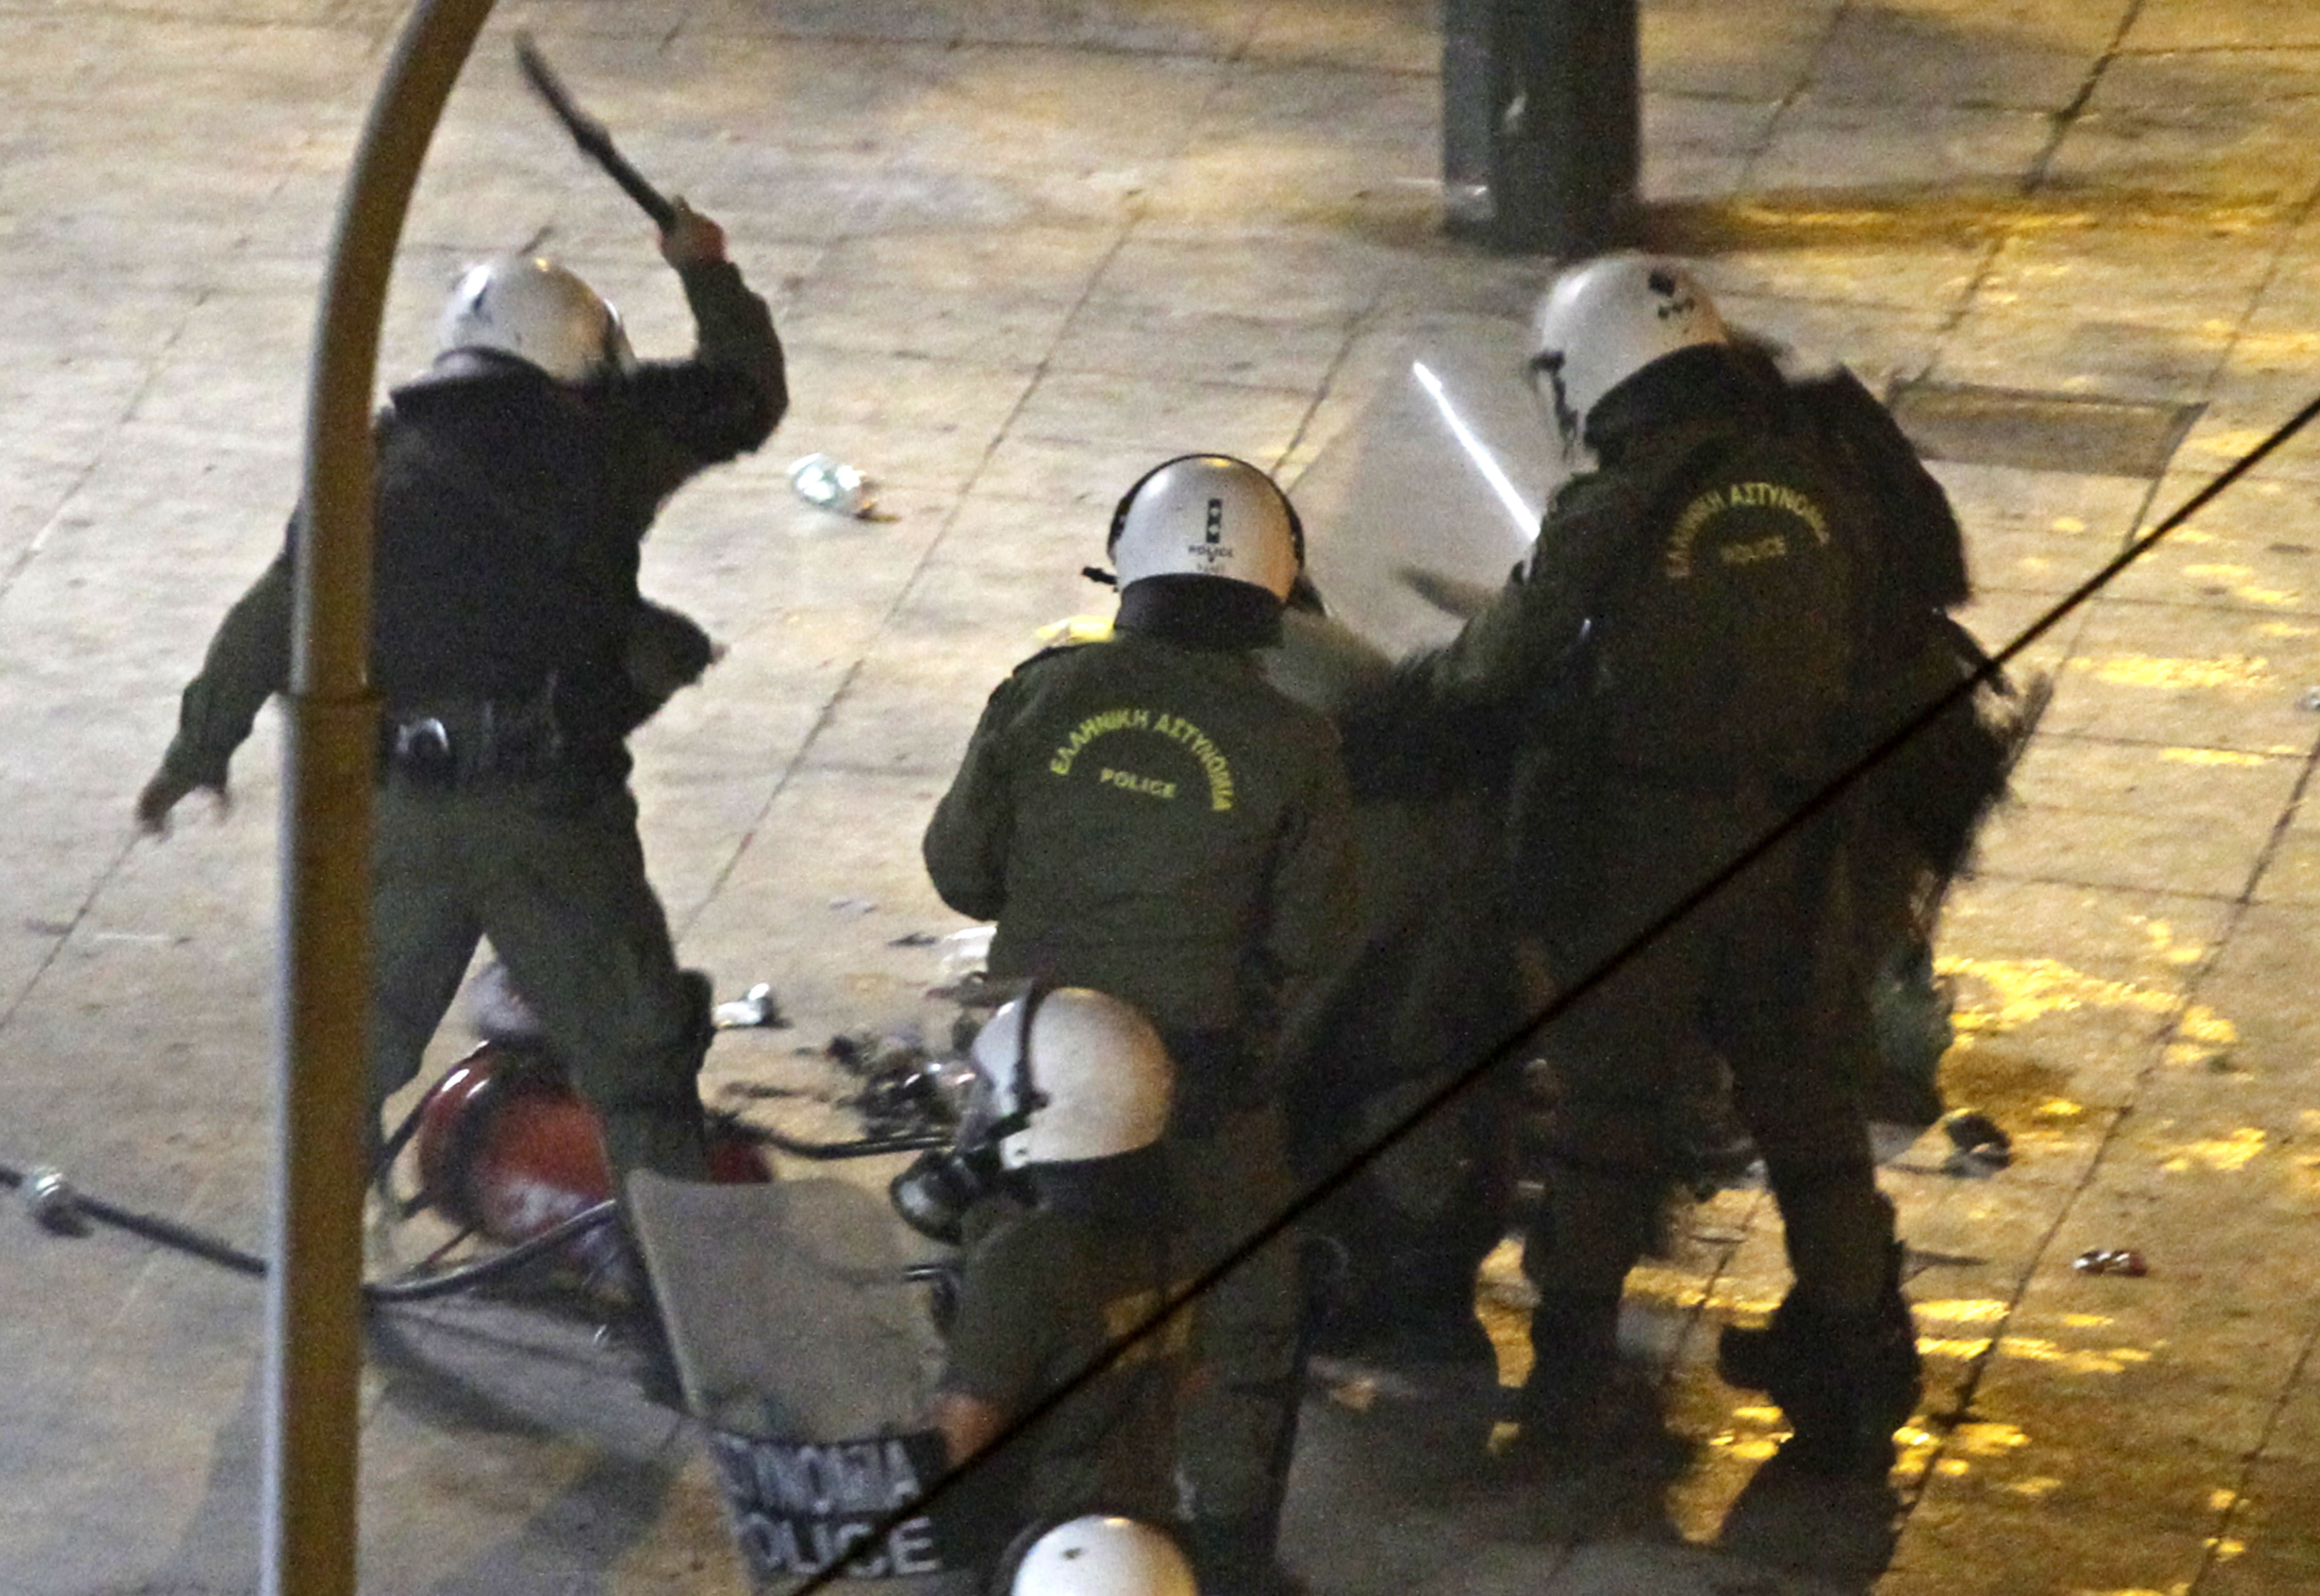 Arga greker ägnade natten åt att vandalisera, kasta molotovcocktails mot polisen, sätta eld på bilar och slåss med kravallpolisen. Många har använt ordet anarki för att beskriva Aten. Nytt kaos väntas under onsdagen.